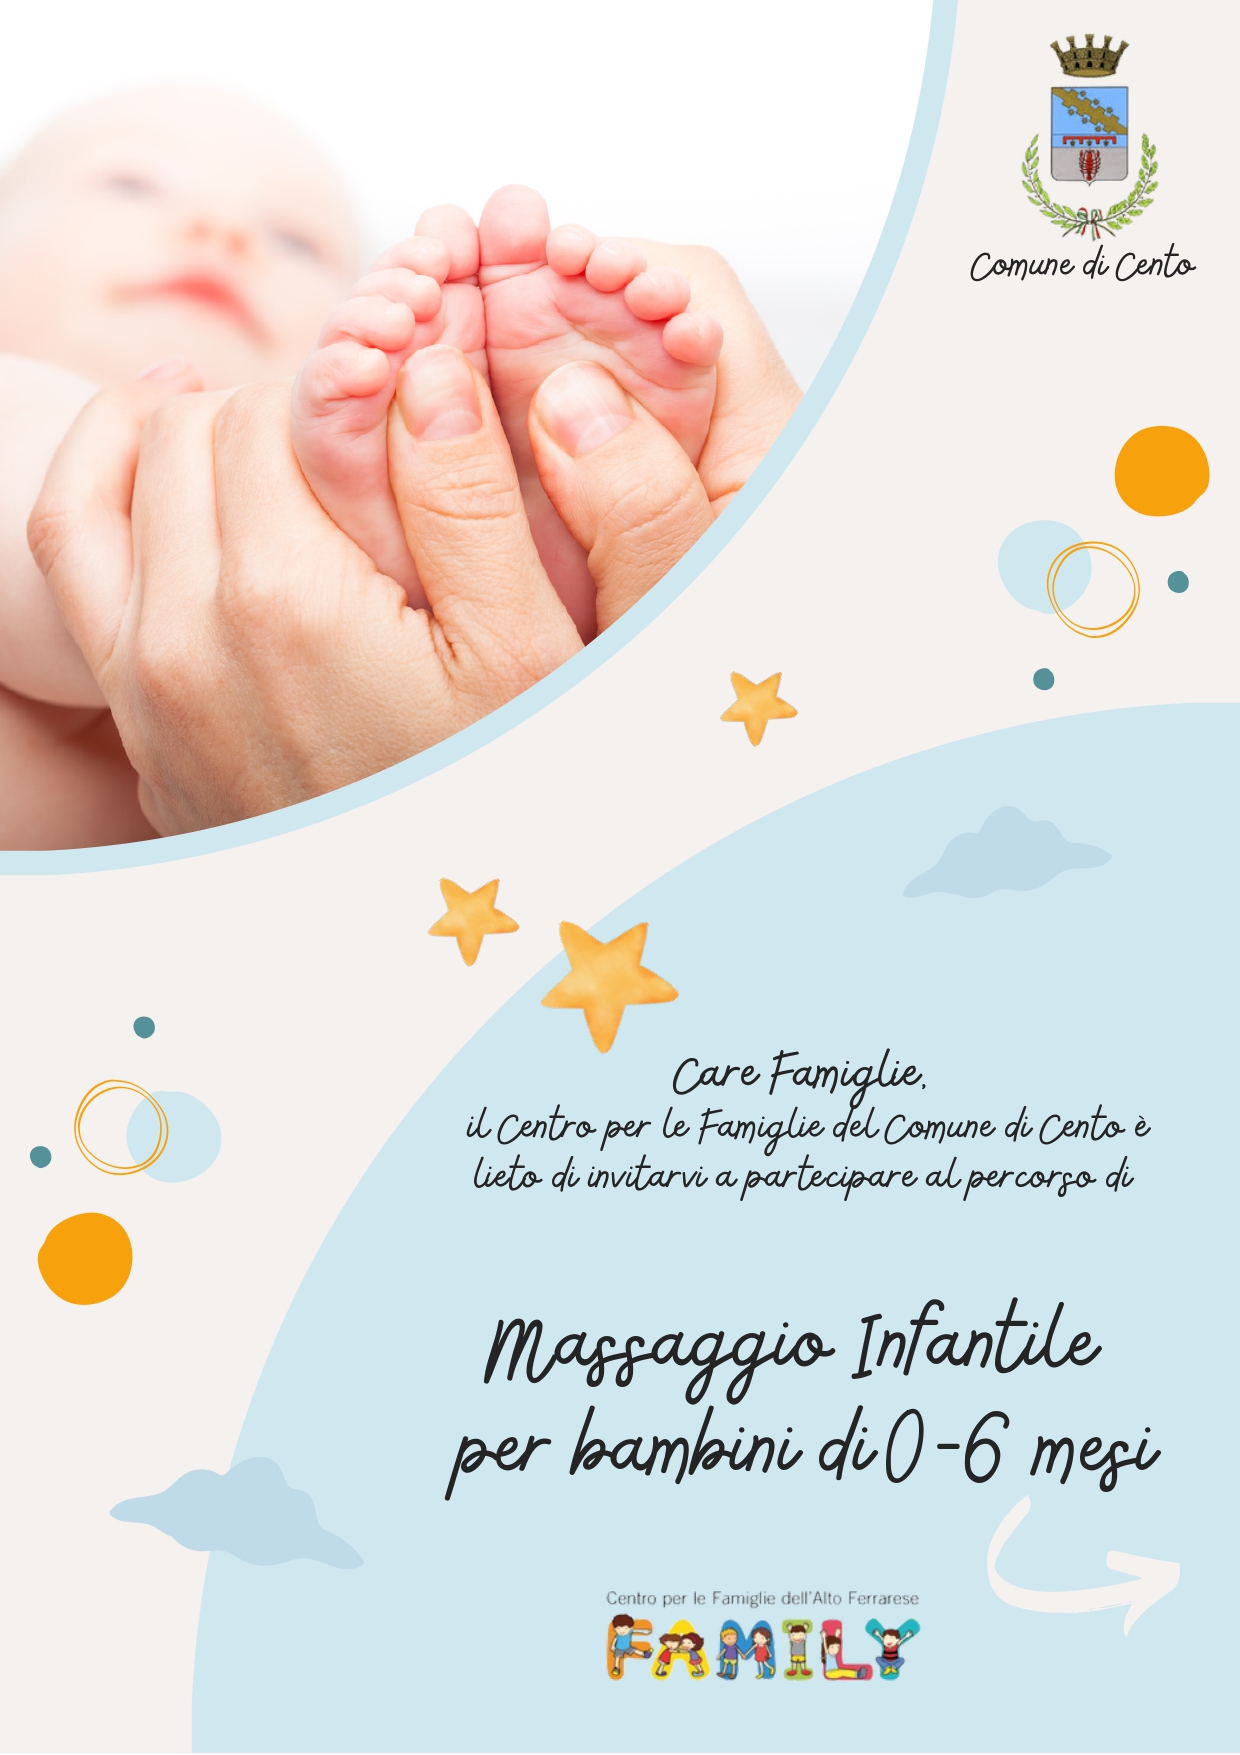 lettera massaggio infantile con immagine neonato 